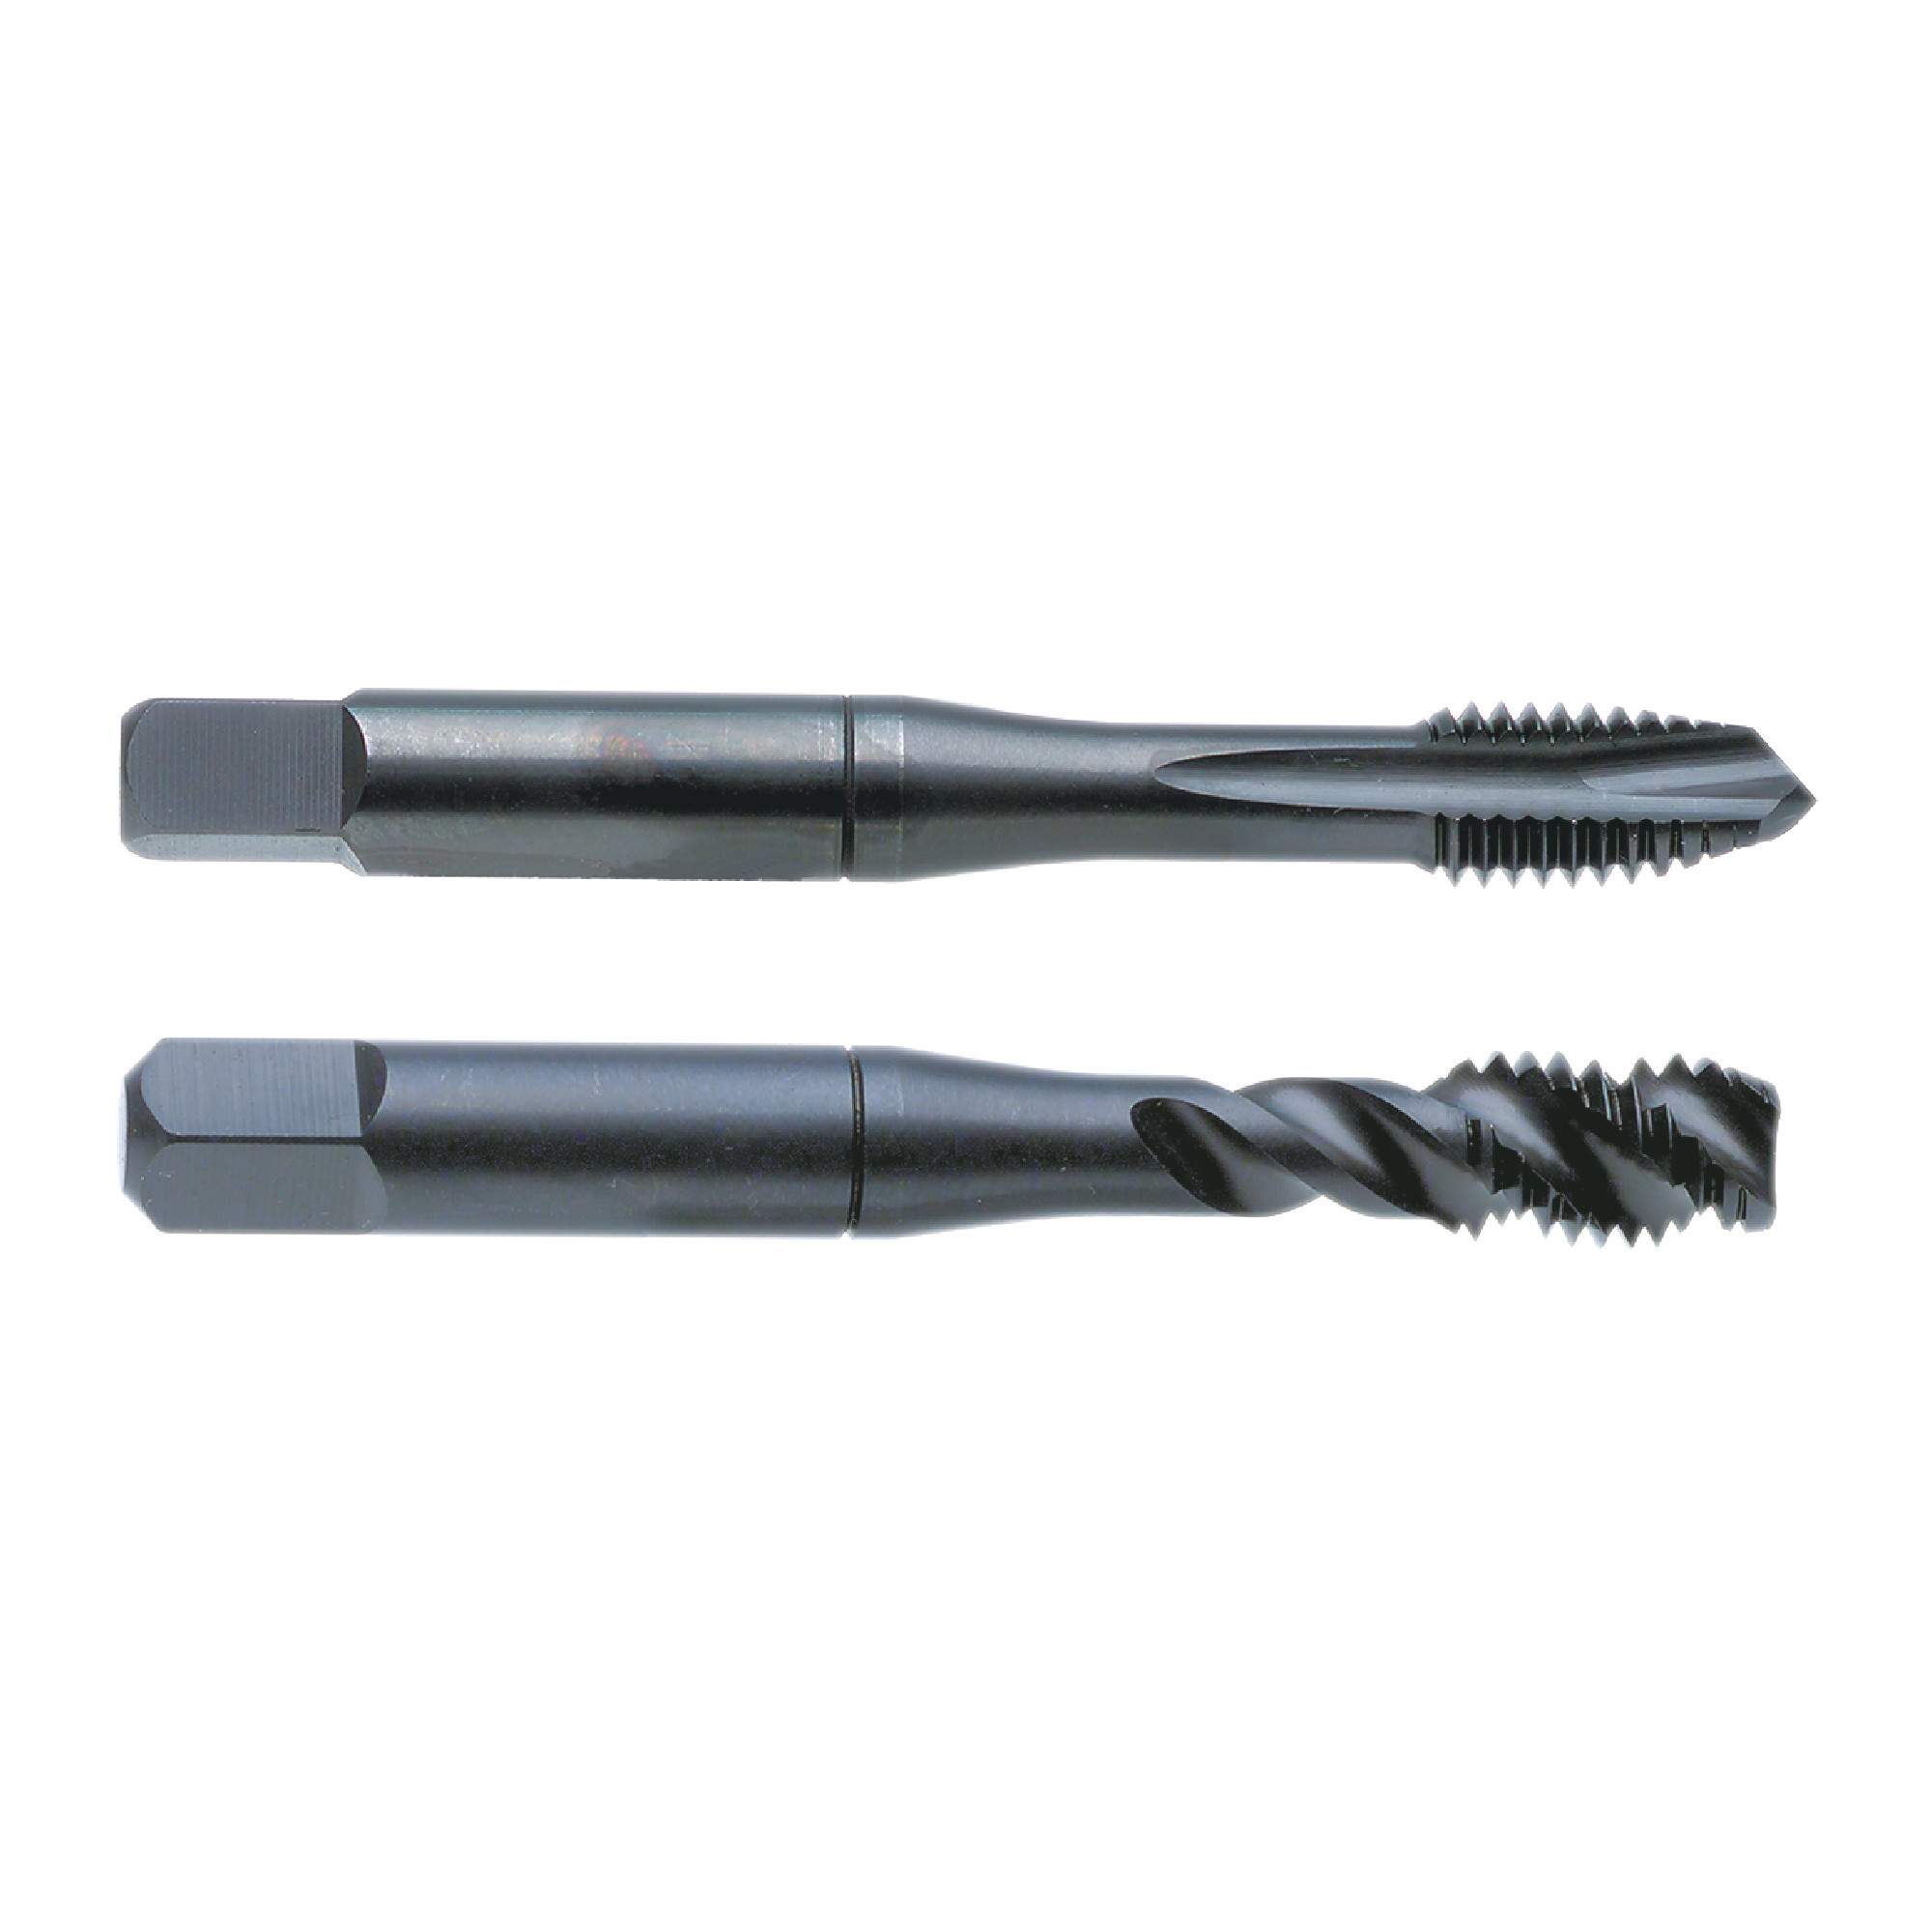 Nachi 10mmX1.25mm D5 VTP Cobalt/Vanadium High Speed Steel 3 Flute Spiral Pointed Plug Tap